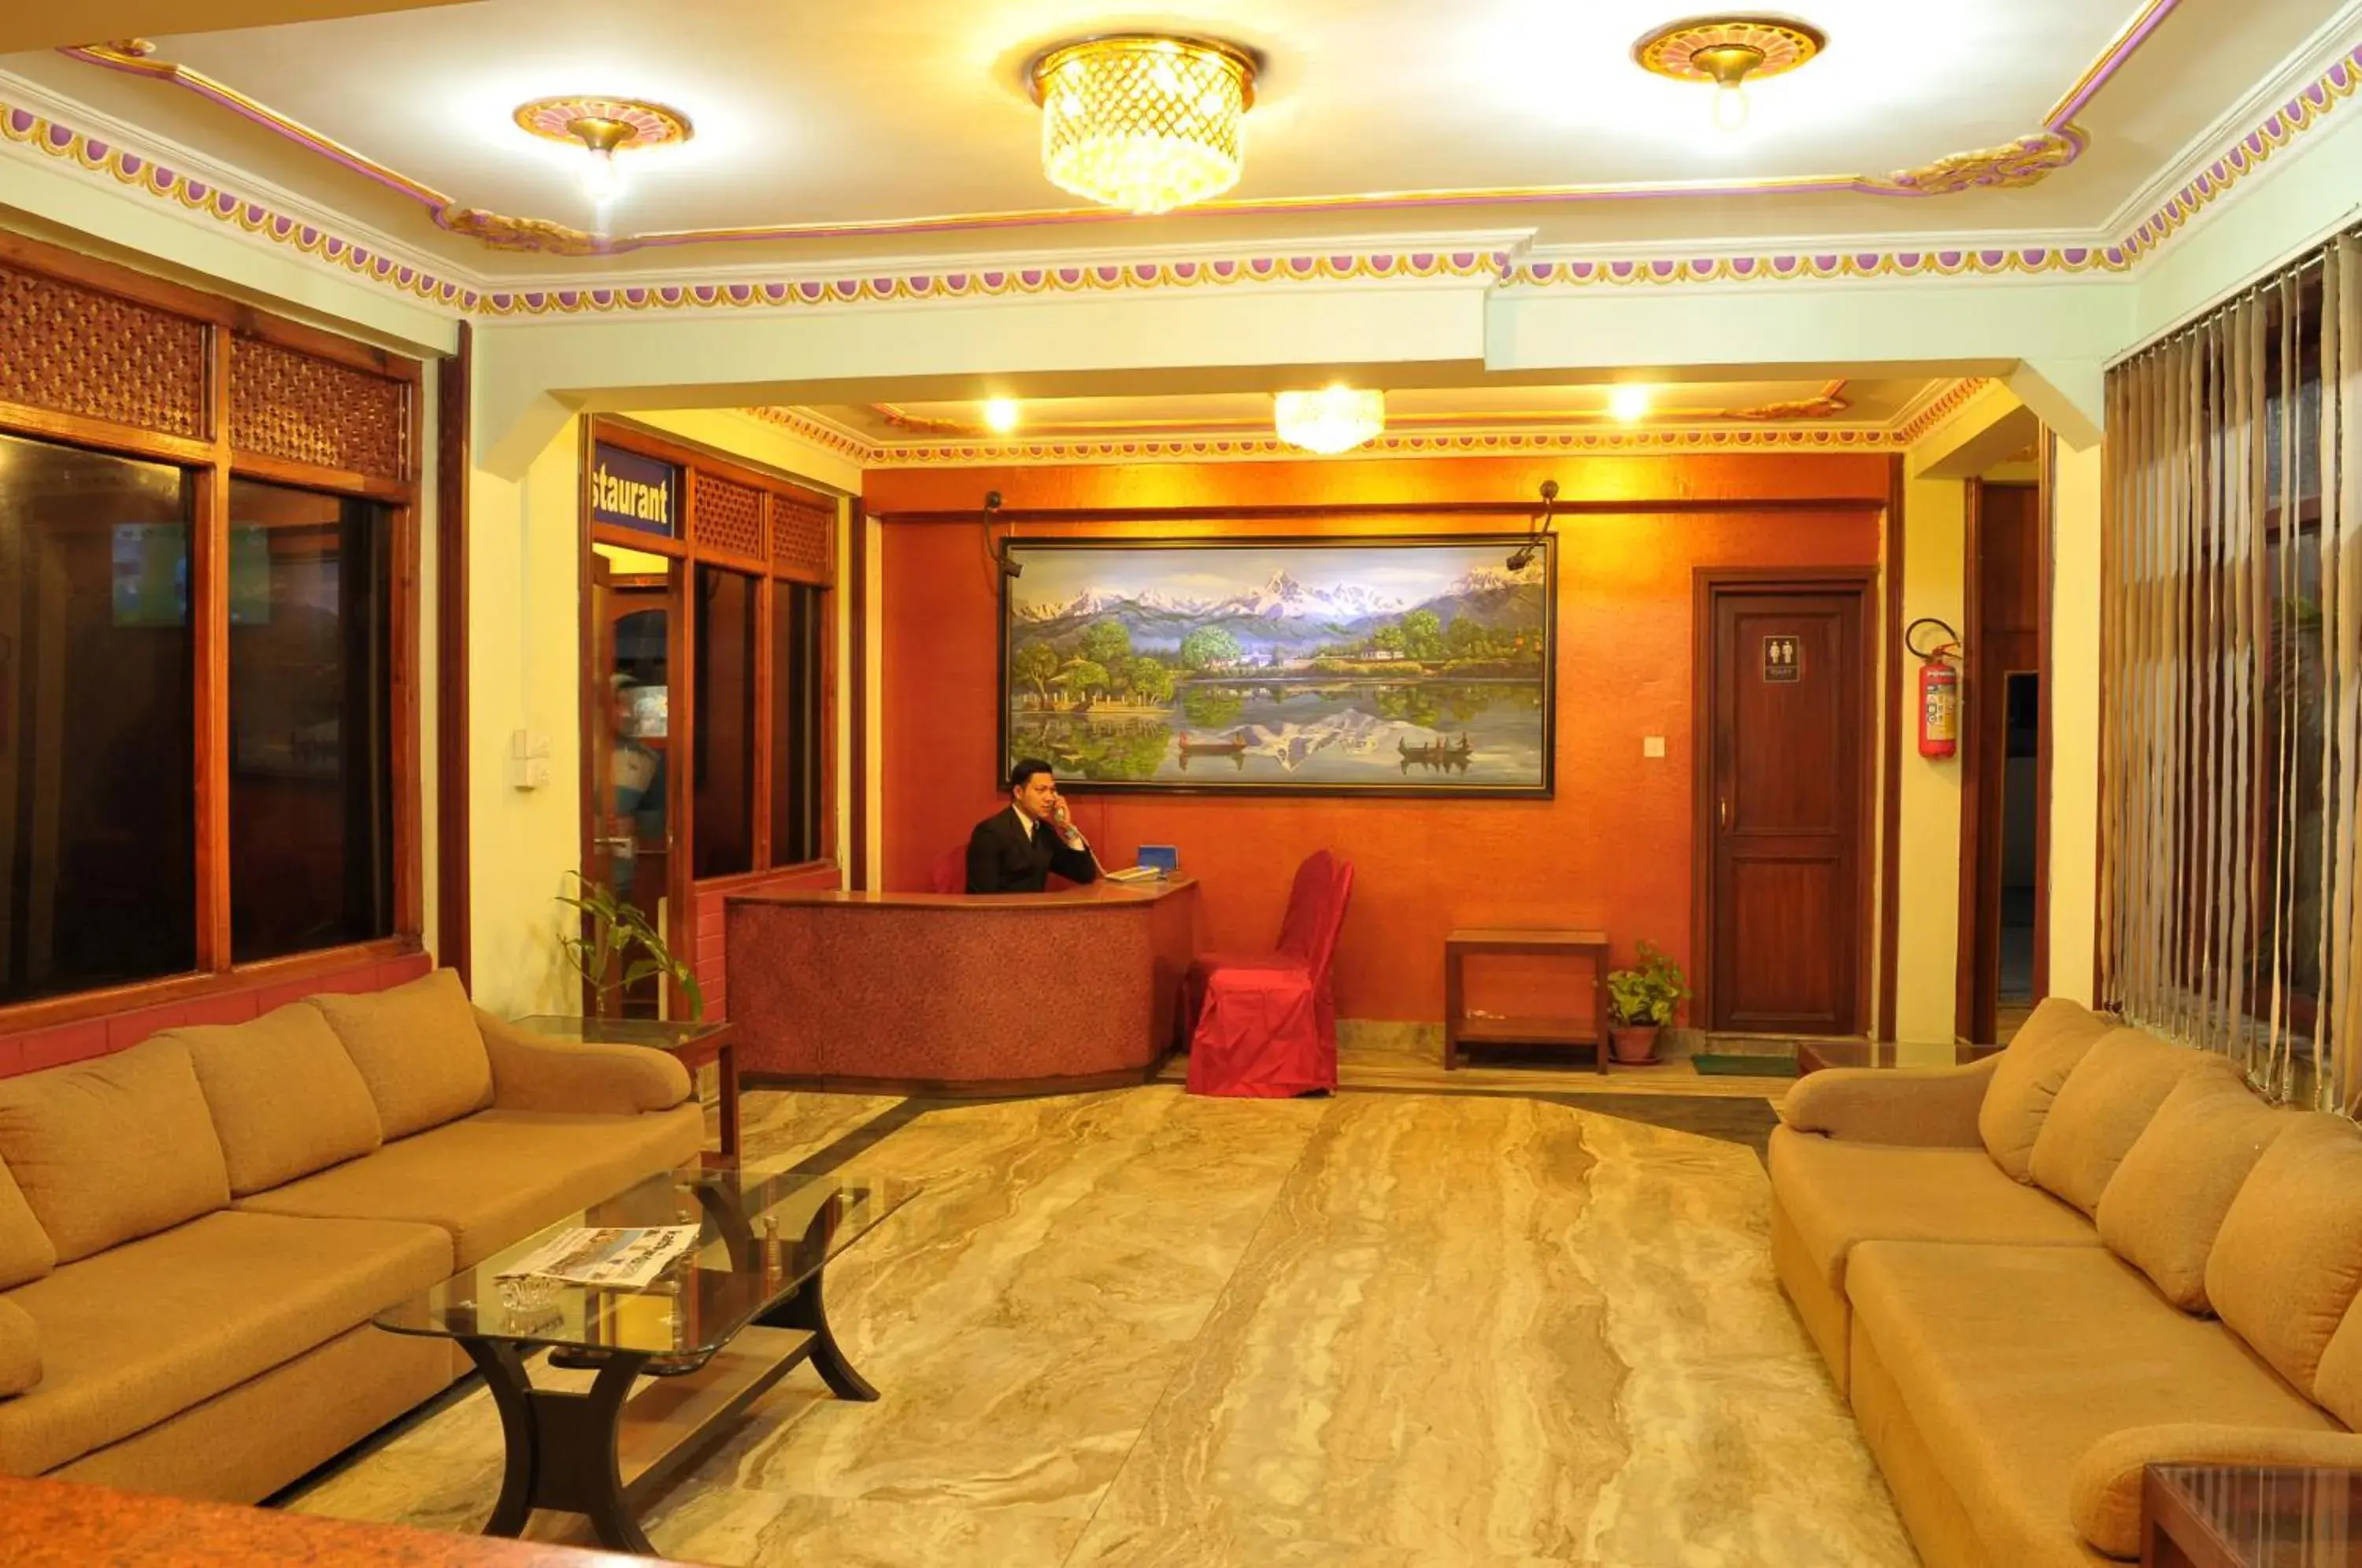 Lobby or reception, Lobby/Reception in Hotel Brihaspati